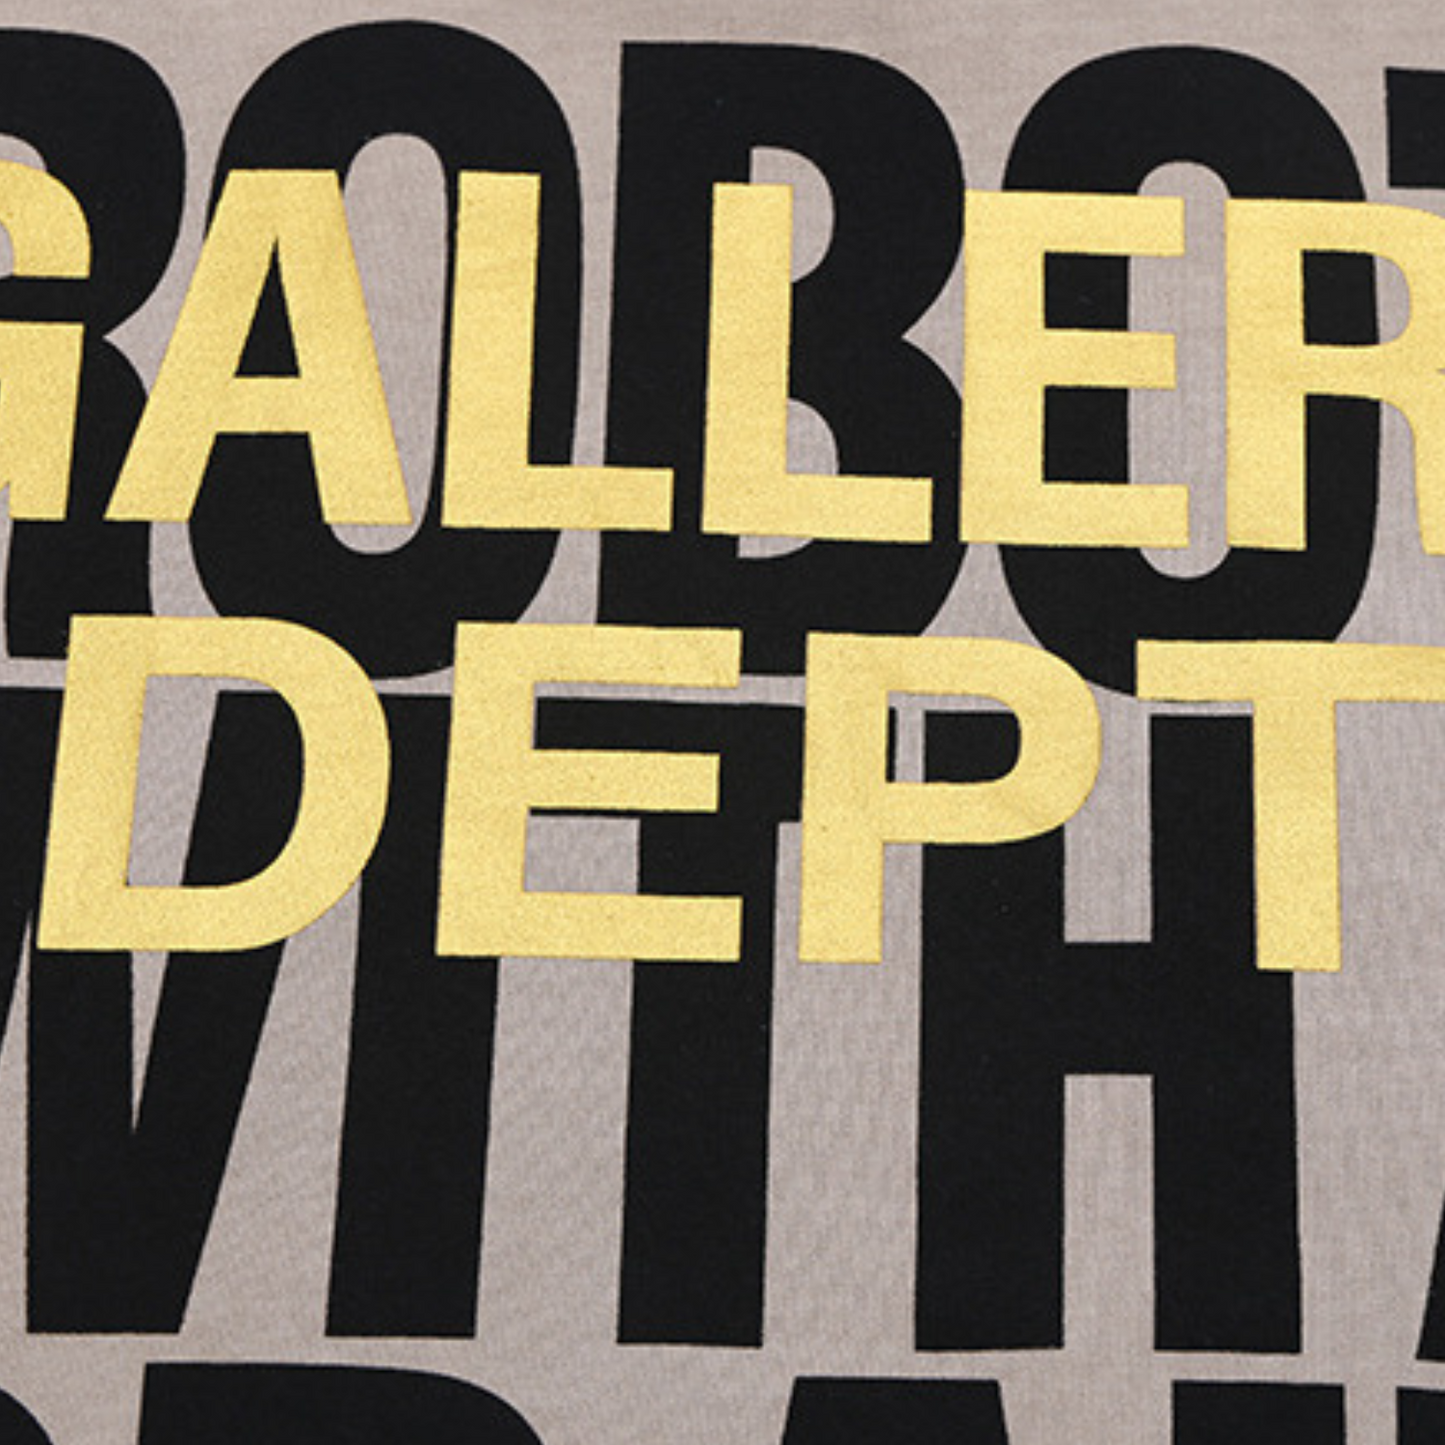 Gallery Dept. SLEEP APNEA, ROBOT WITH A BRAIN! T-shirt GALLERY DEPT LOGO